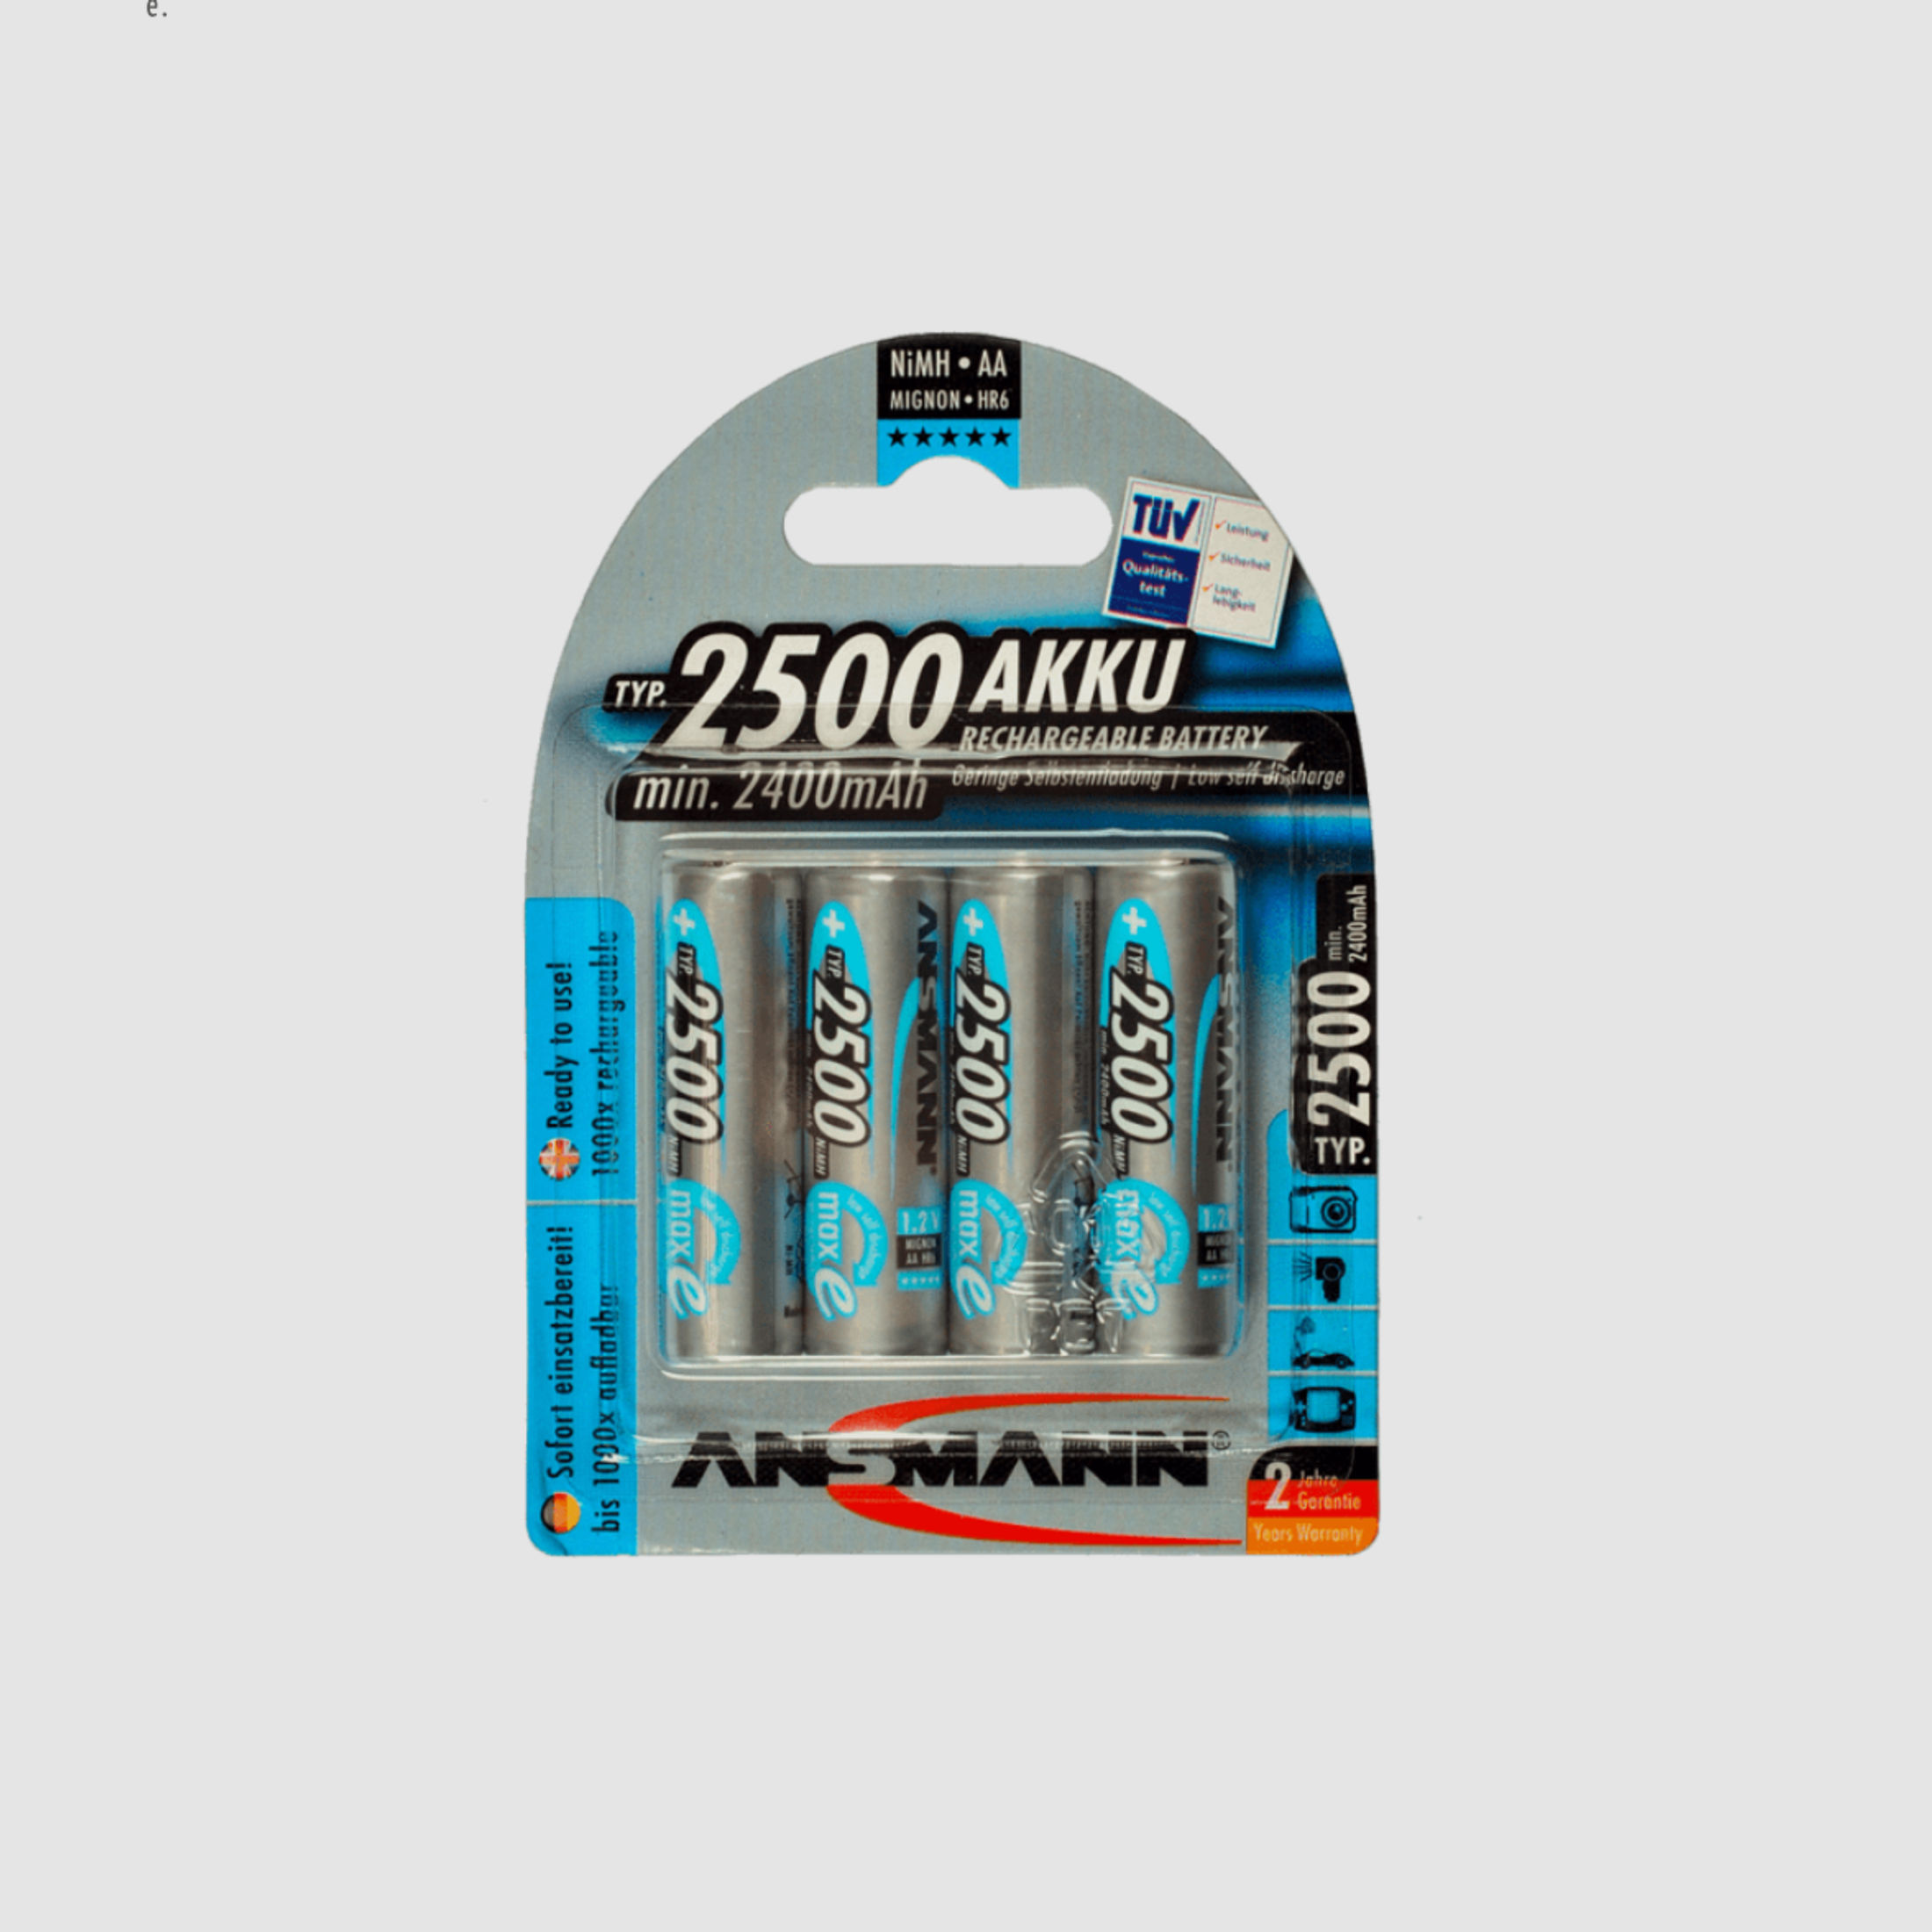 Ansmann 80226268 Minox Akku Pack 4x AA 2400 mAh